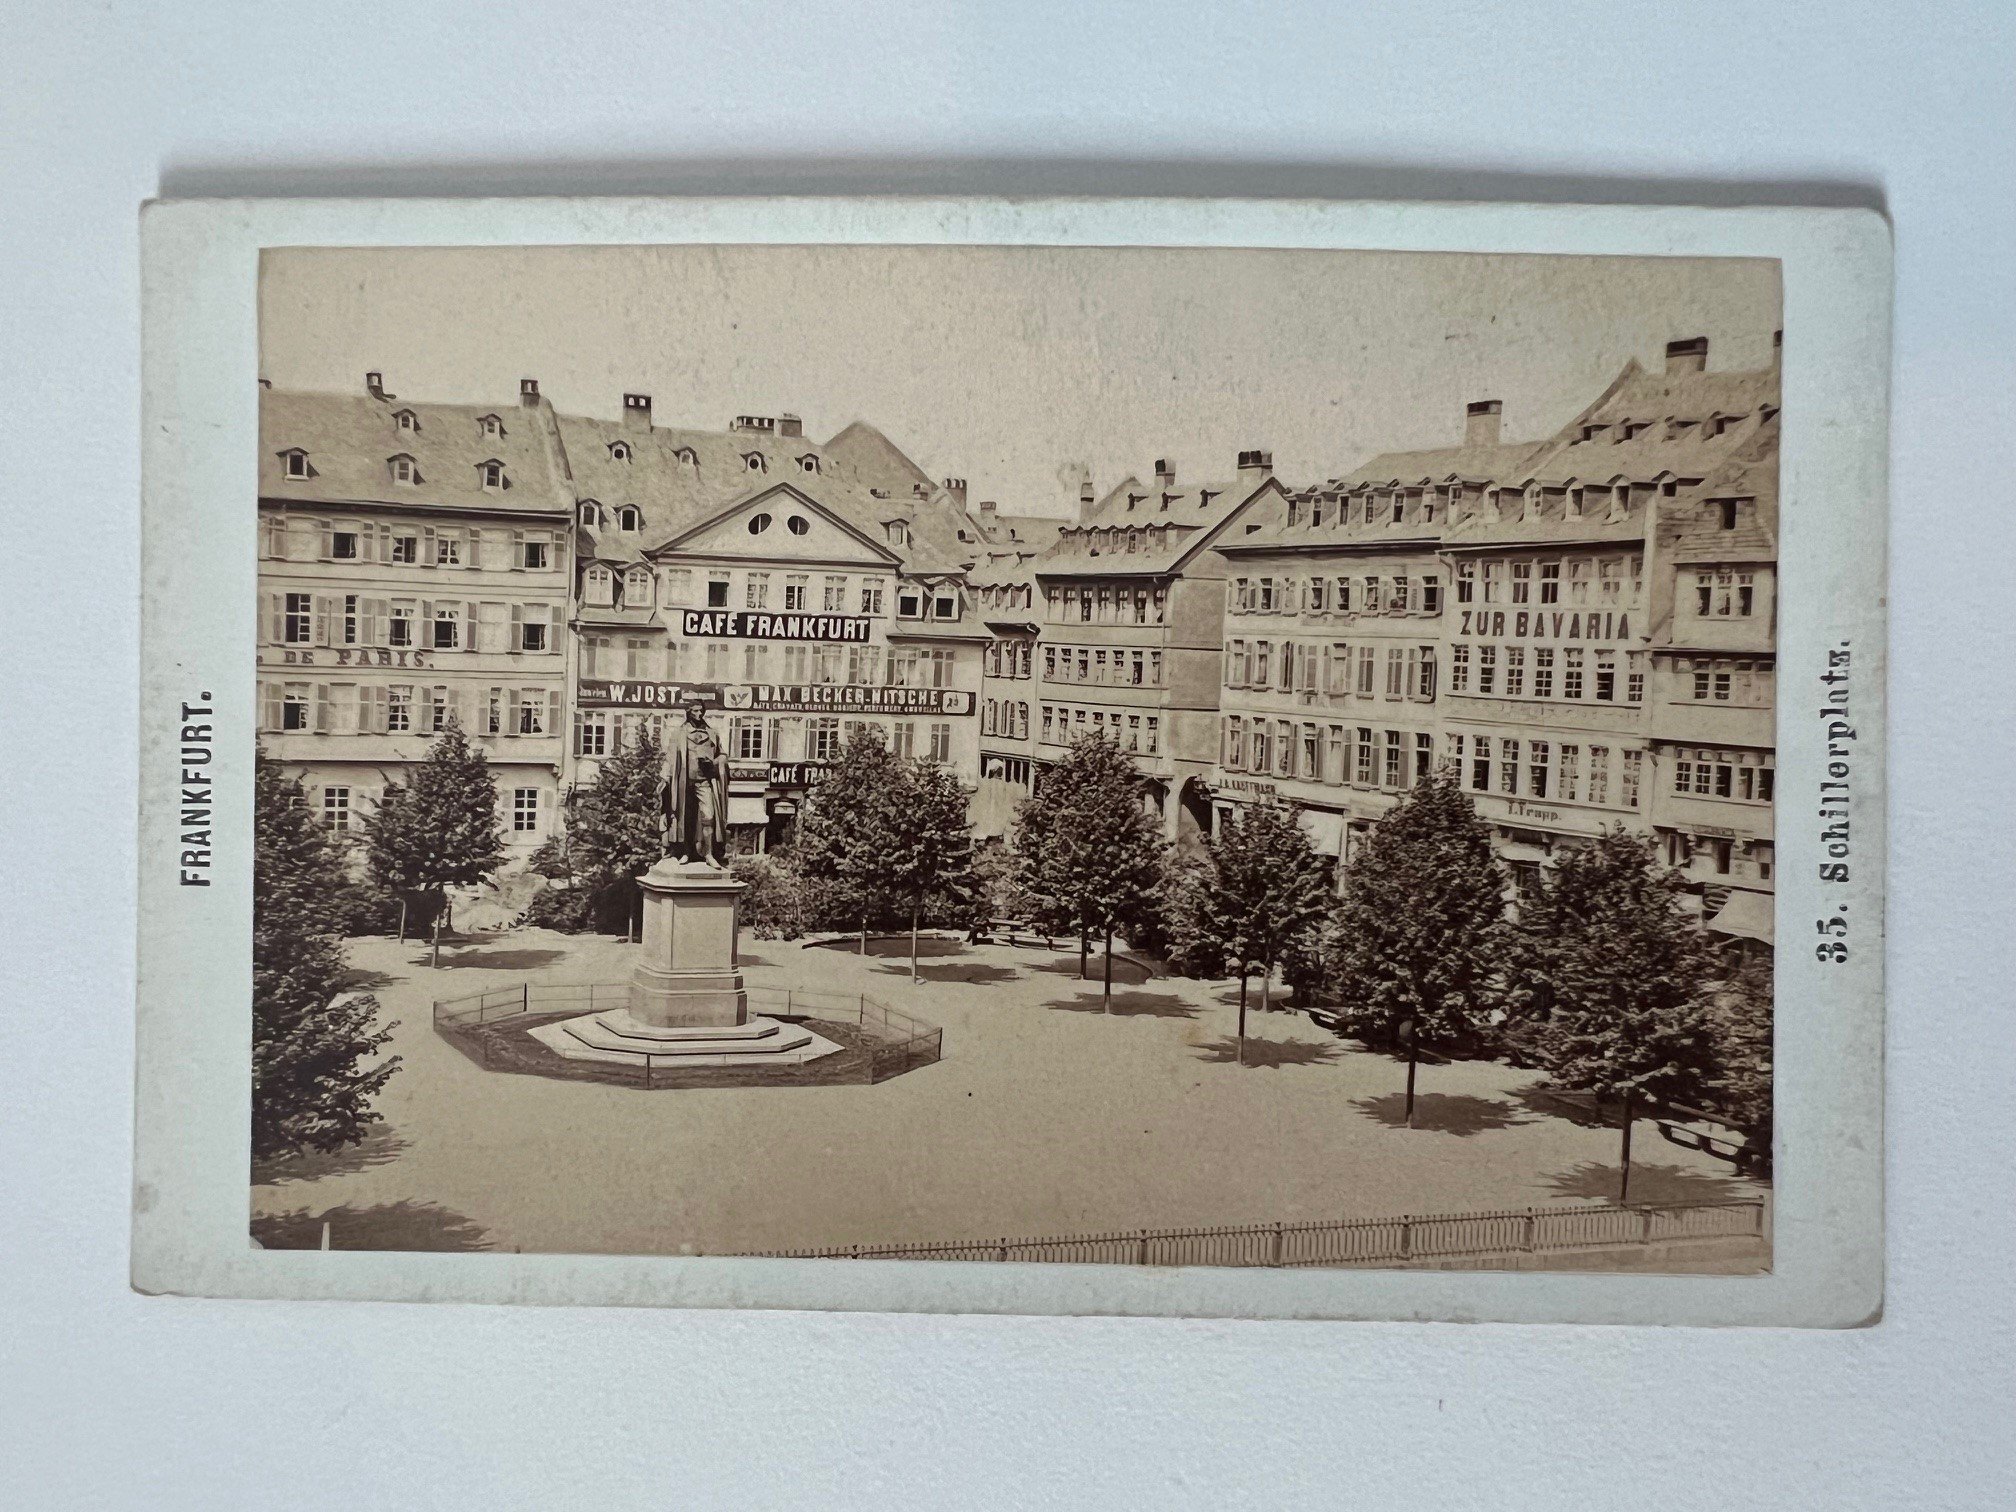 CdV, Frantisek Fridrich, Frankfurt, Nr. 35, Schillerplatz, ca. 1875. (Taunus-Rhein-Main - Regionalgeschichtliche Sammlung Dr. Stefan Naas CC BY-NC-SA)